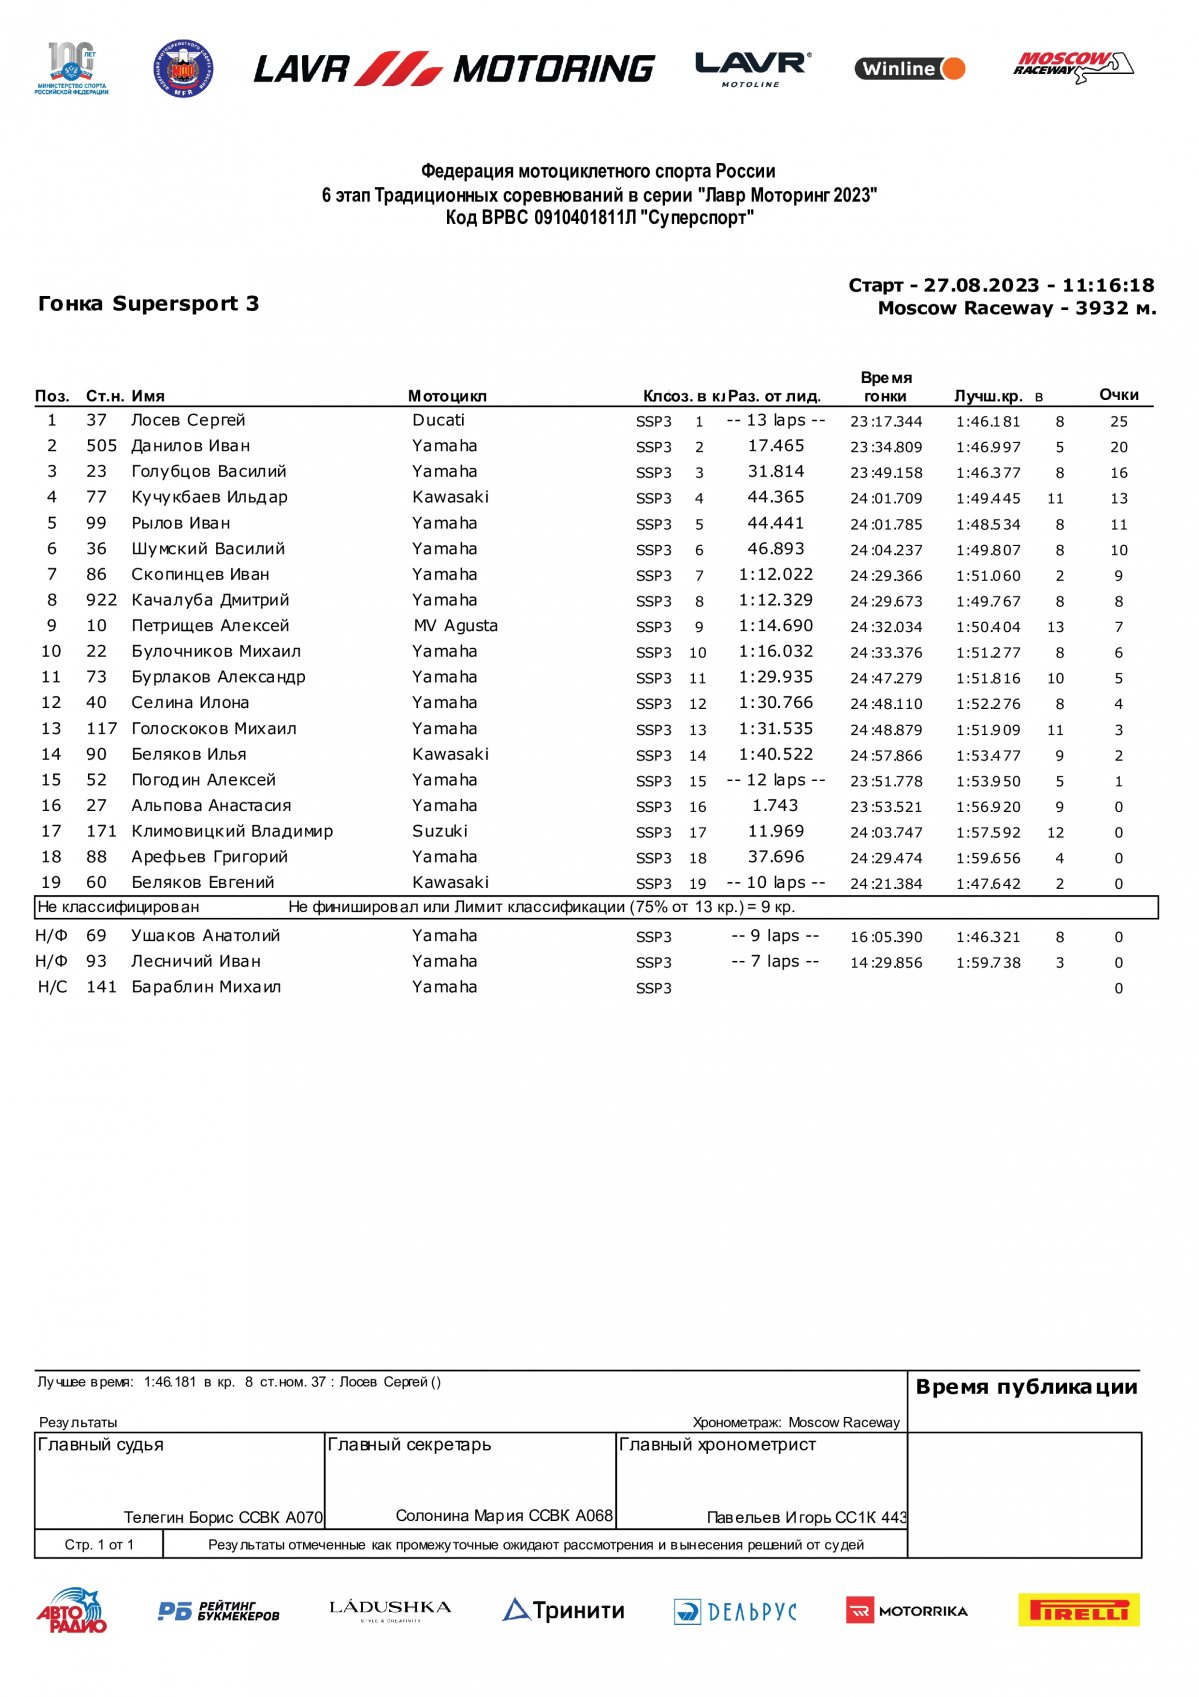 Результаты гонки 6-го этапа Lavr Motoring в классе SSP3